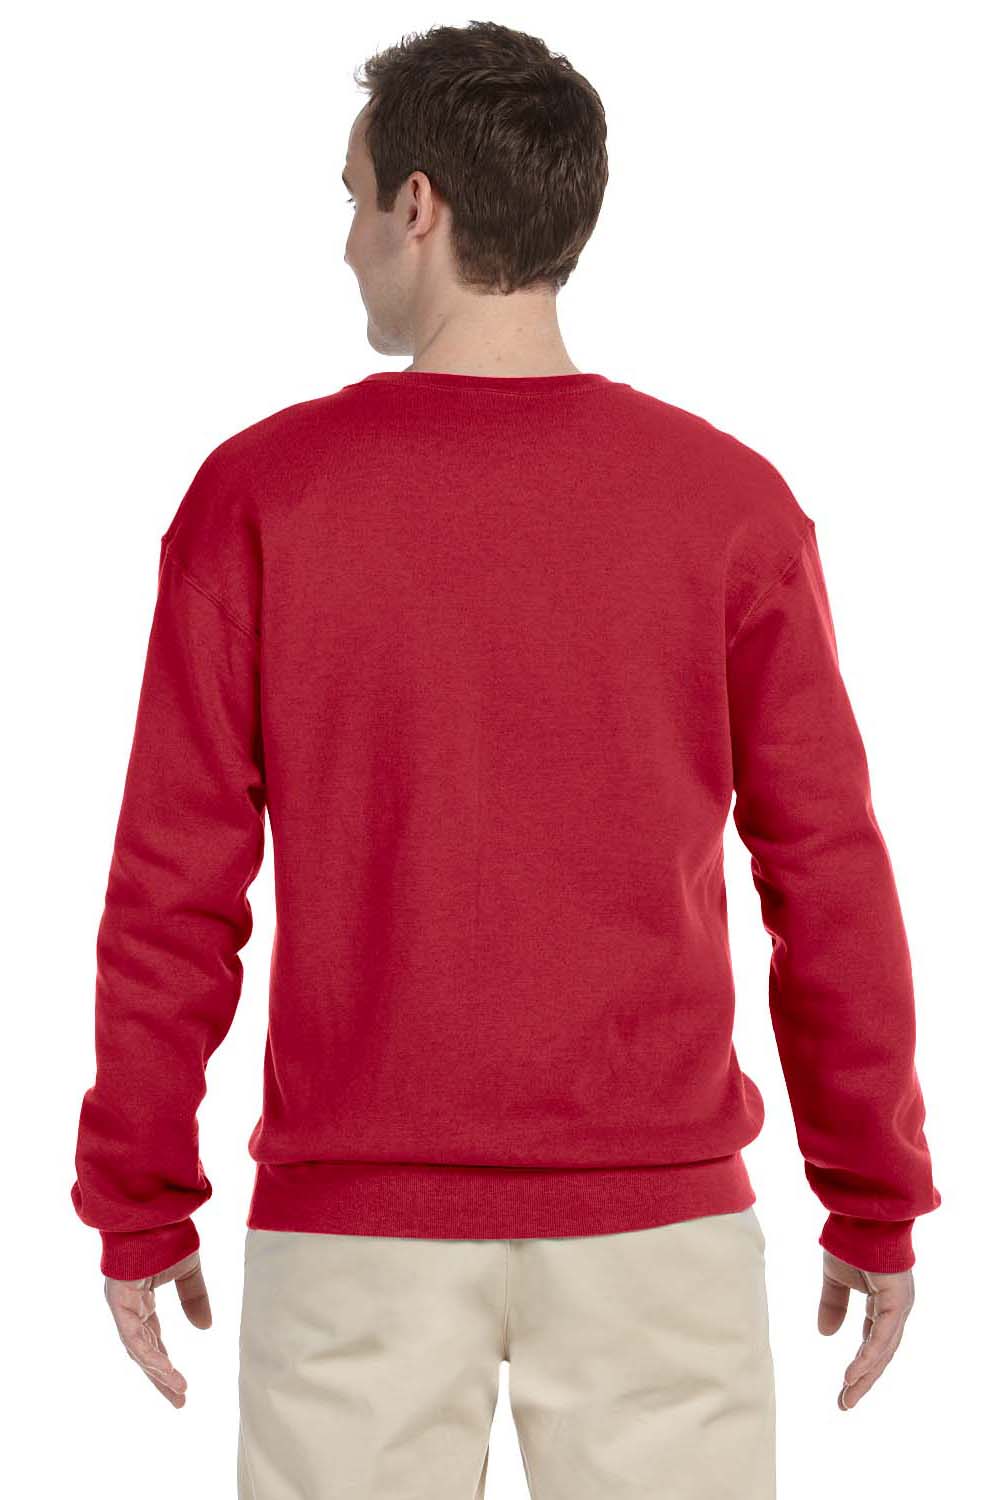 Jerzees 562 Mens NuBlend Fleece Crewneck Sweatshirt Red Back